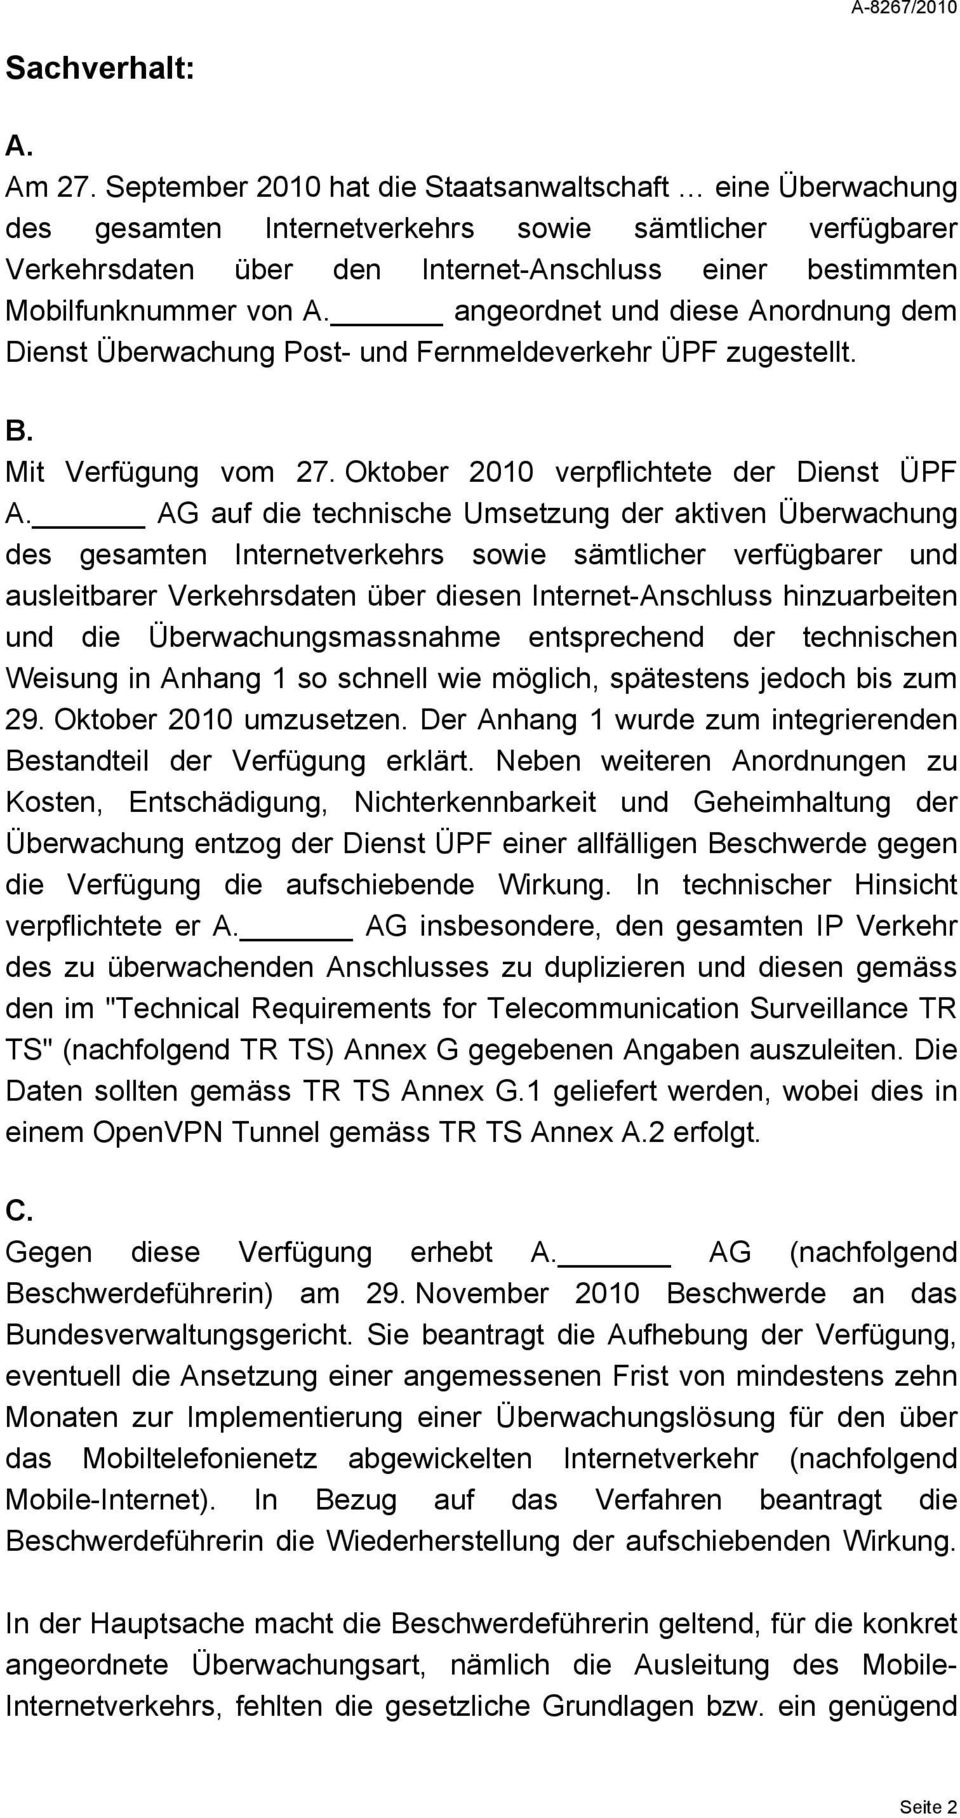 angeordnet und diese Anordnung dem Dienst Überwachung Post- und Fernmeldeverkehr ÜPF zugestellt. B. Mit Verfügung vom 27. Oktober 2010 verpflichtete der Dienst ÜPF A.